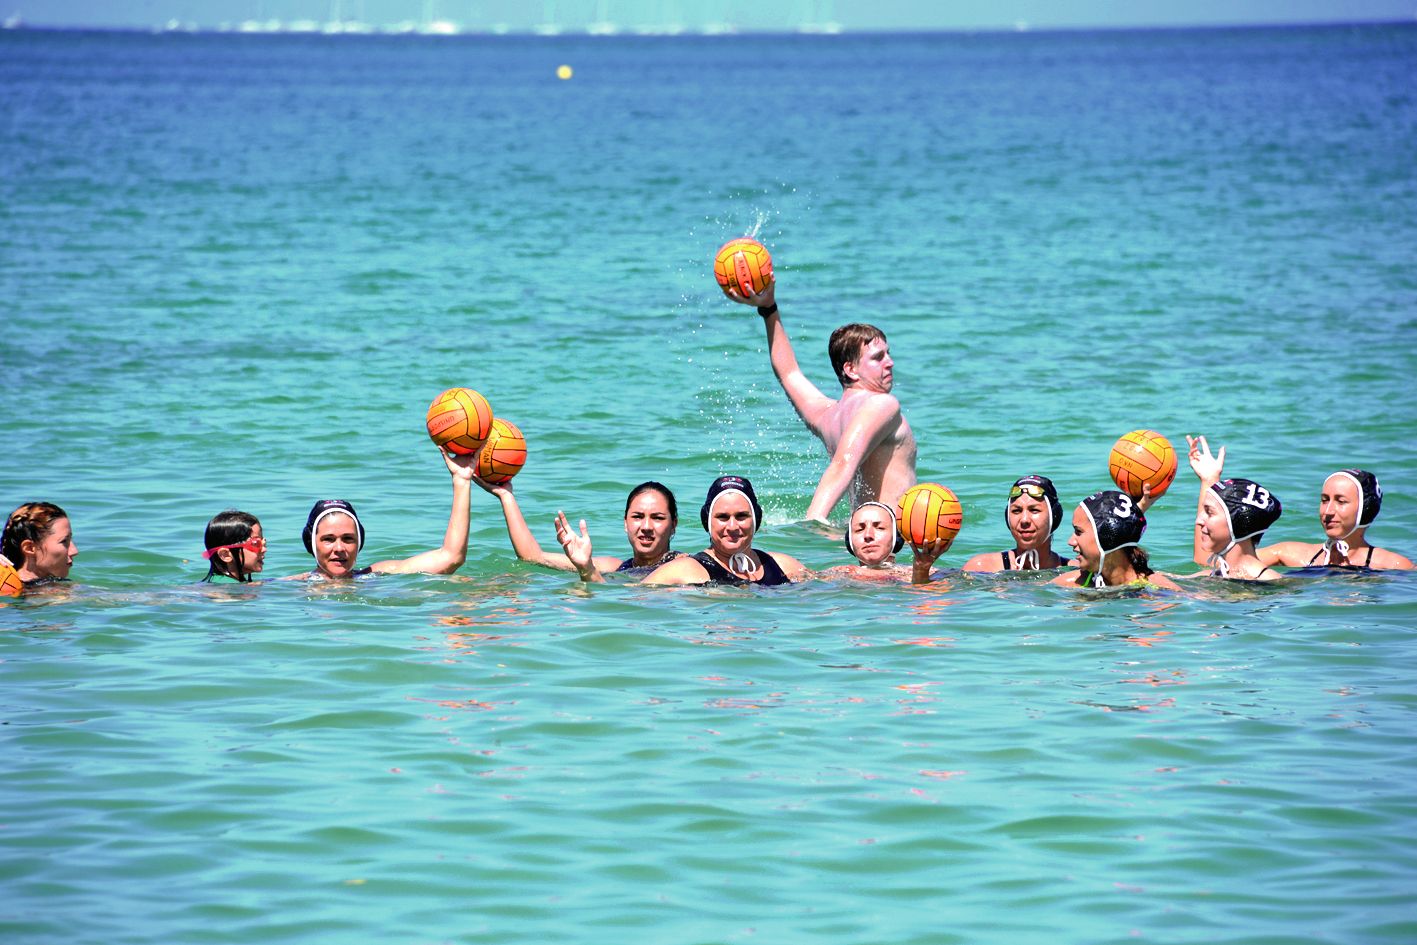 Première et seule équipe féminine de water-polo de Nouvelle-Calédonie, les Black manta cherchent toujours à promouvoir ce sport exigeant auprès du public féminin. Pendant deux heures, hier matin, les membres de l’équipe se sont donc retrouvées à la baie d